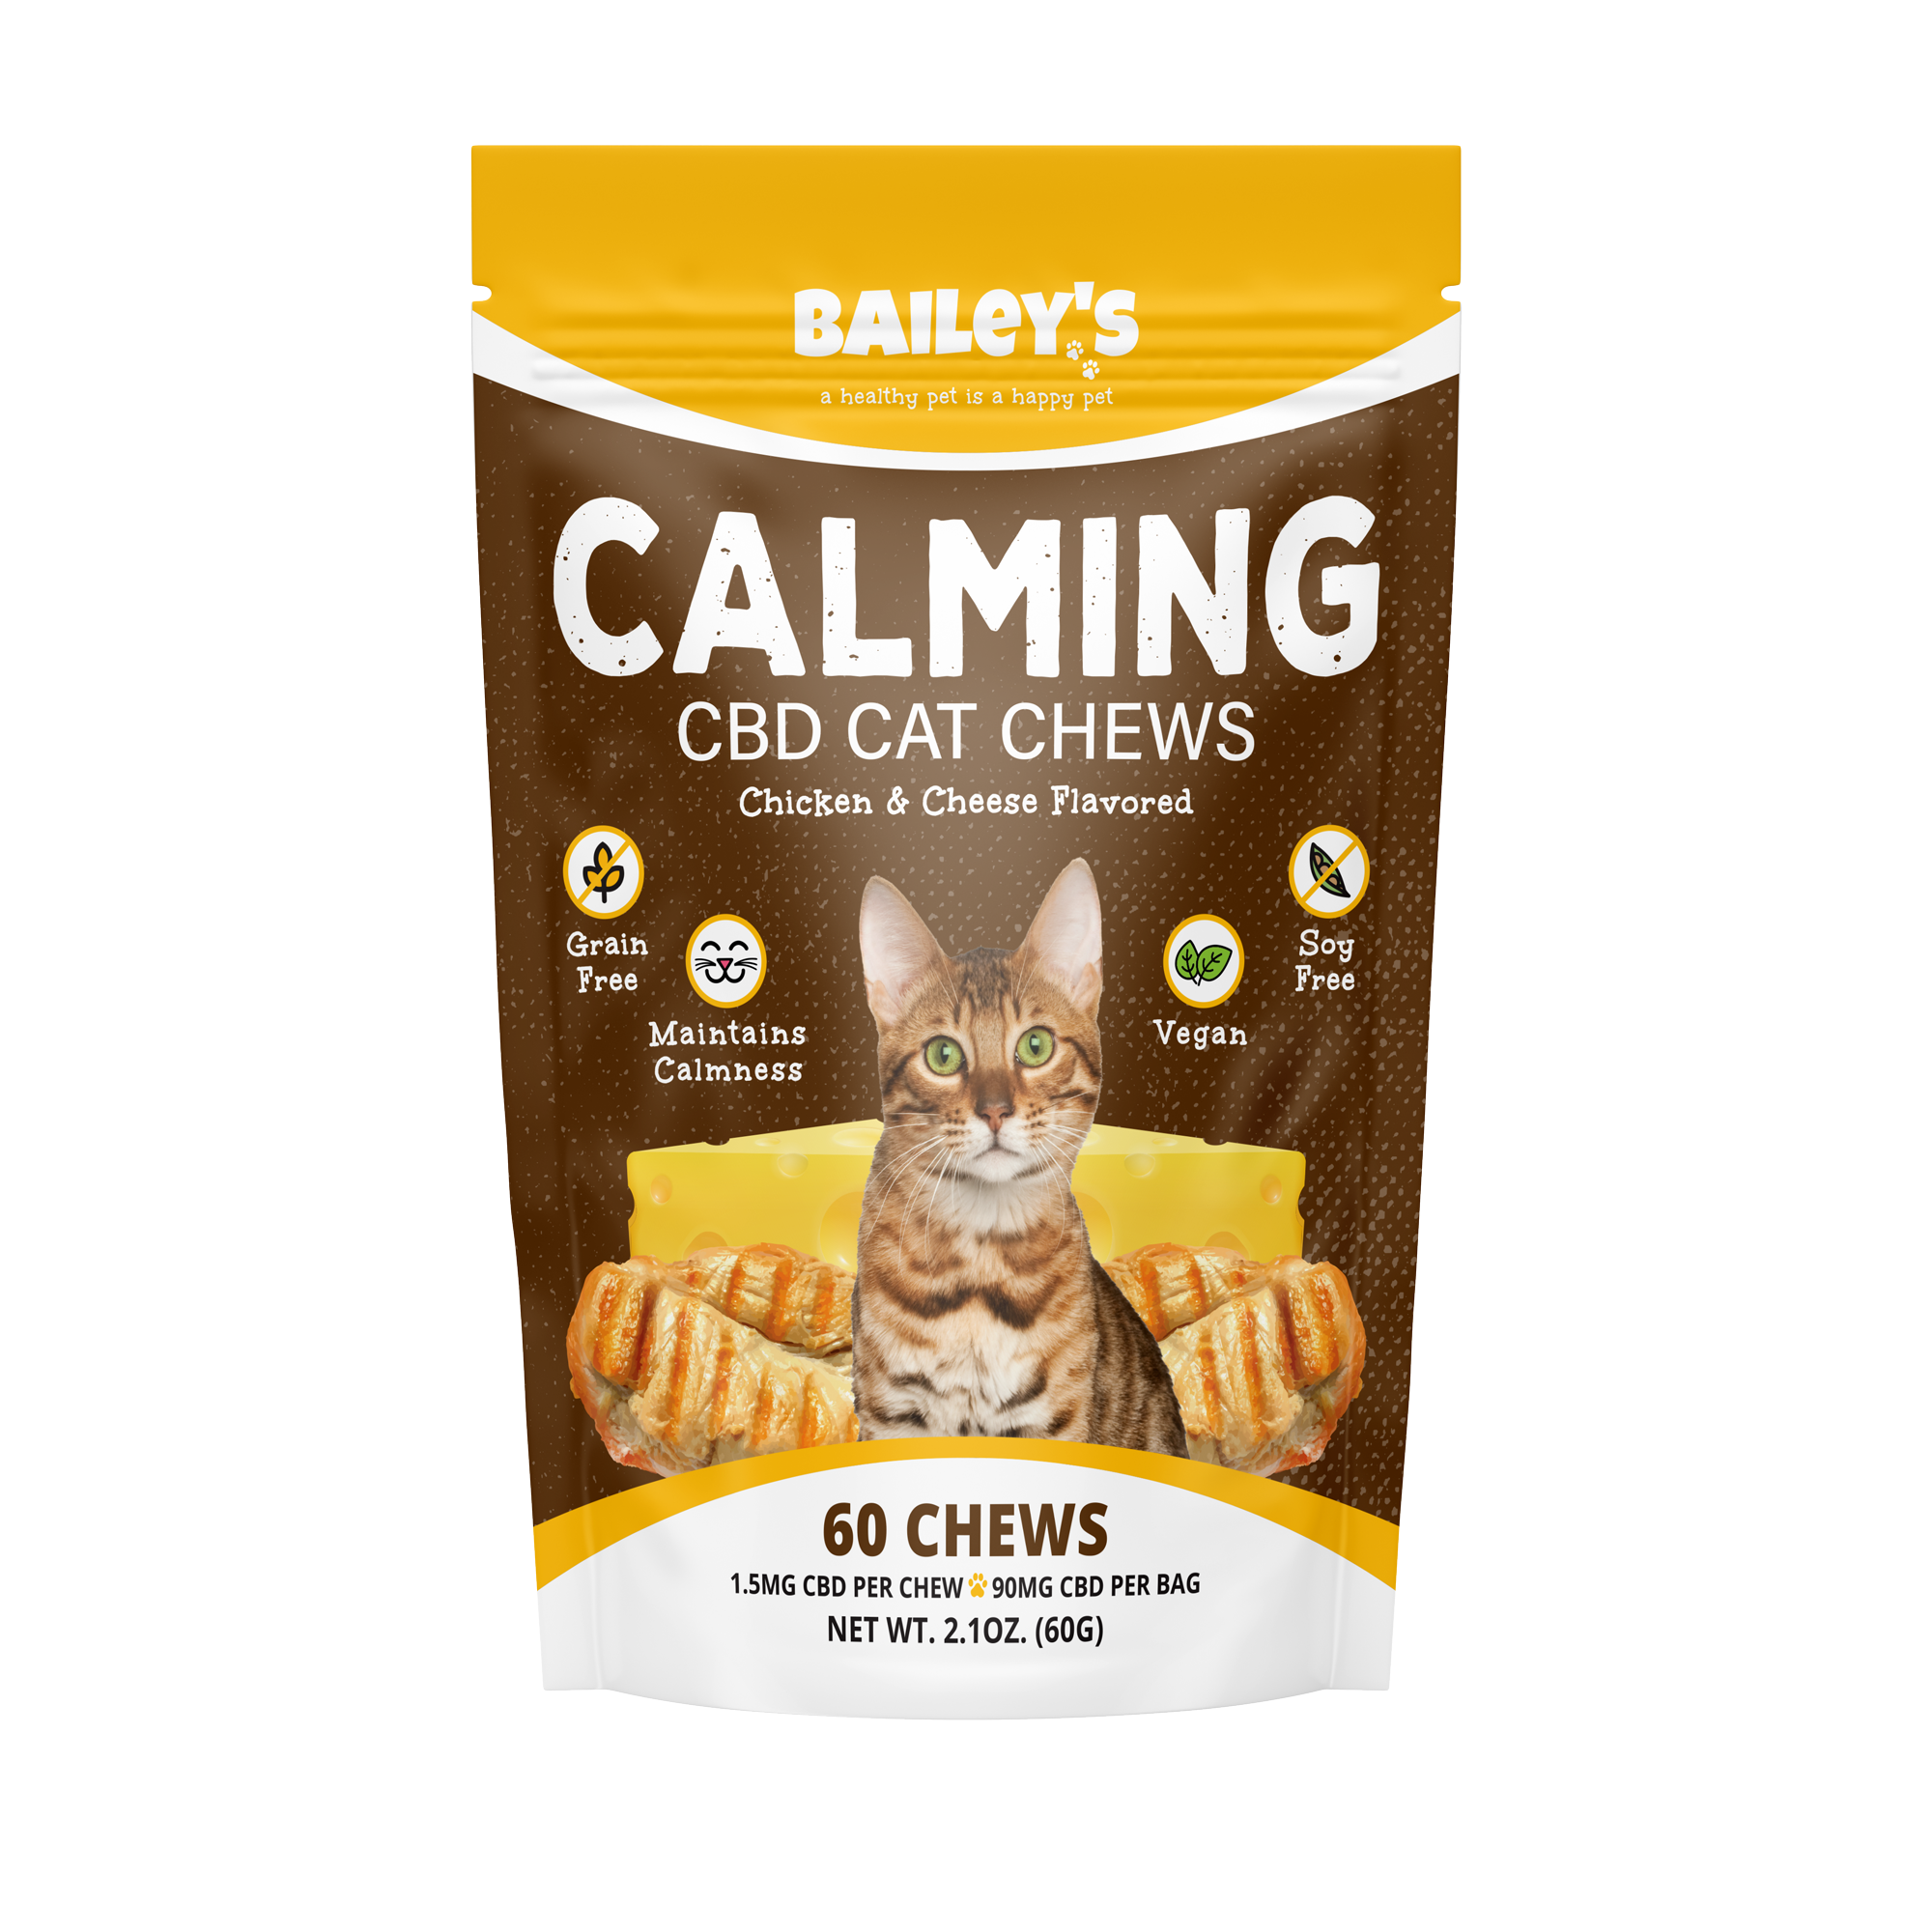 Baileys Calming CBD Cat Chews 60 Count